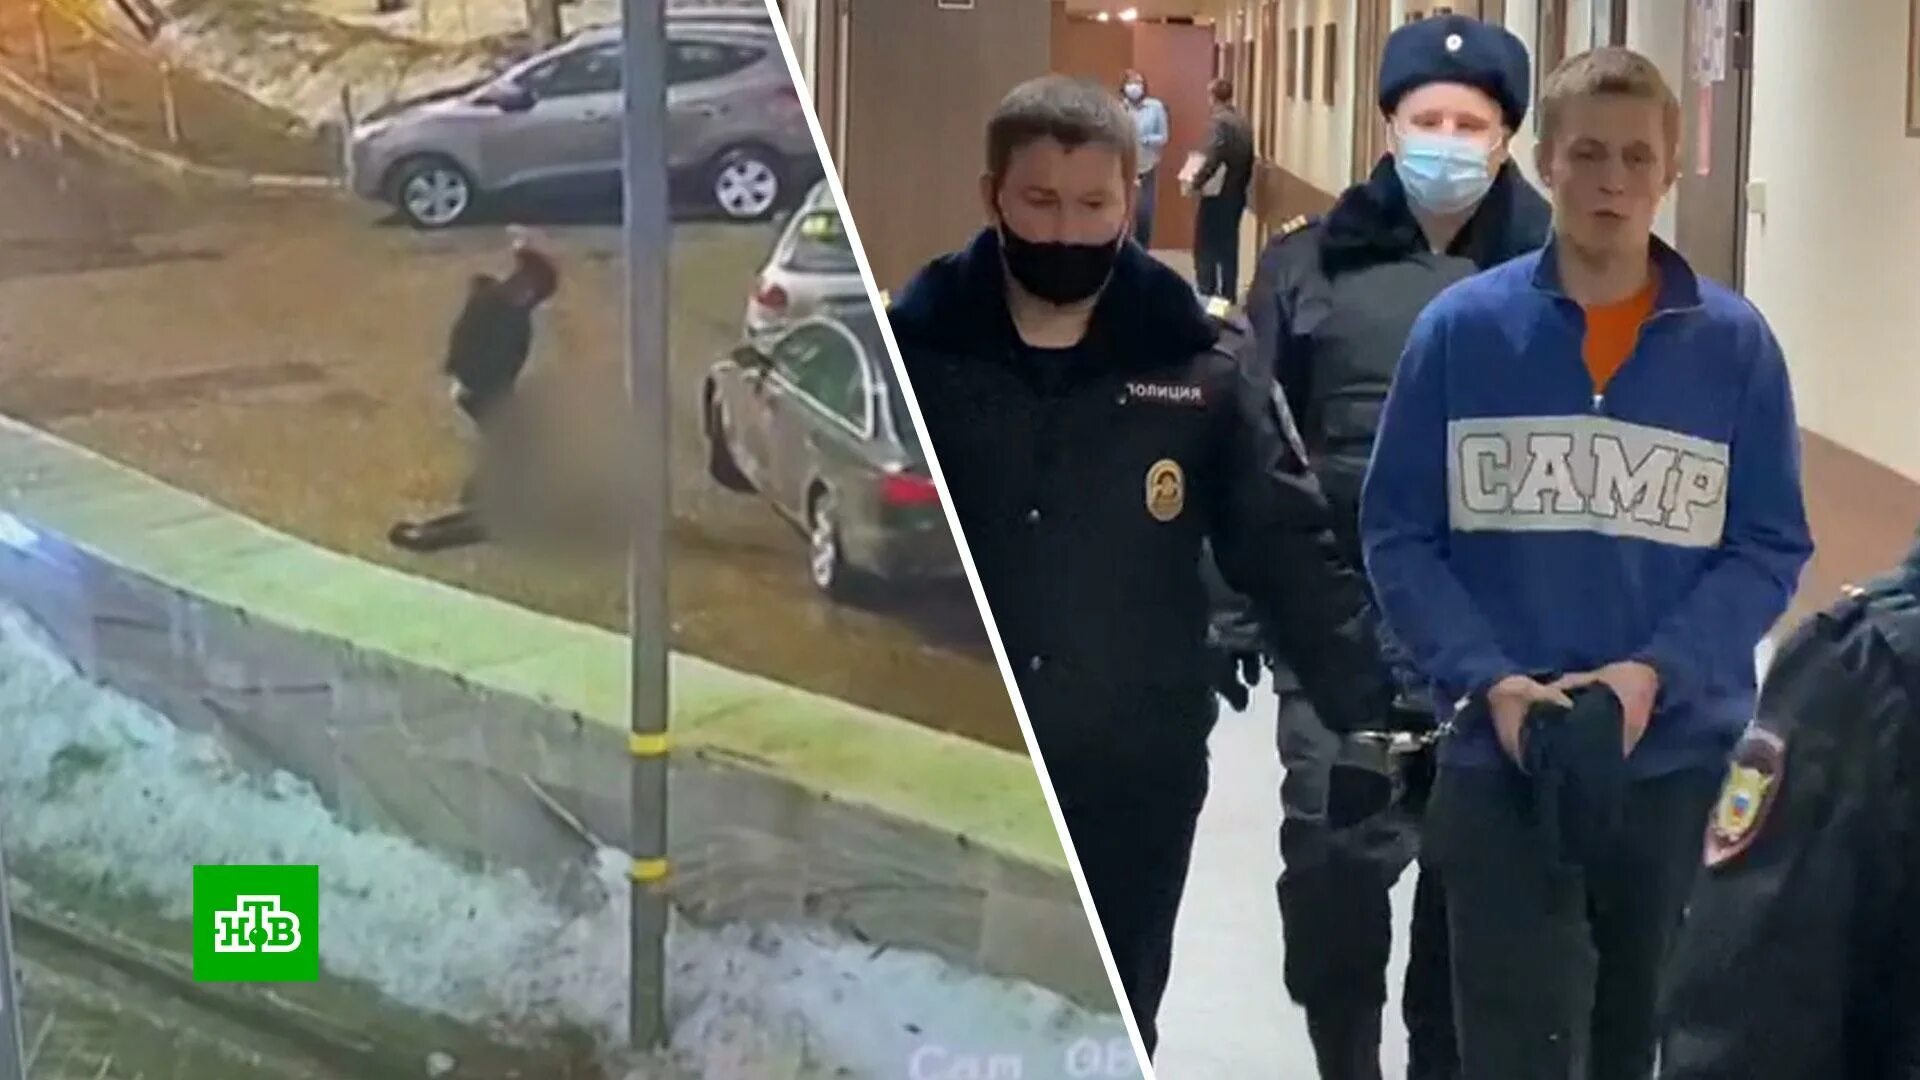 Нападение на прохожего в Москве вчера. Мужик нападал на прохожих